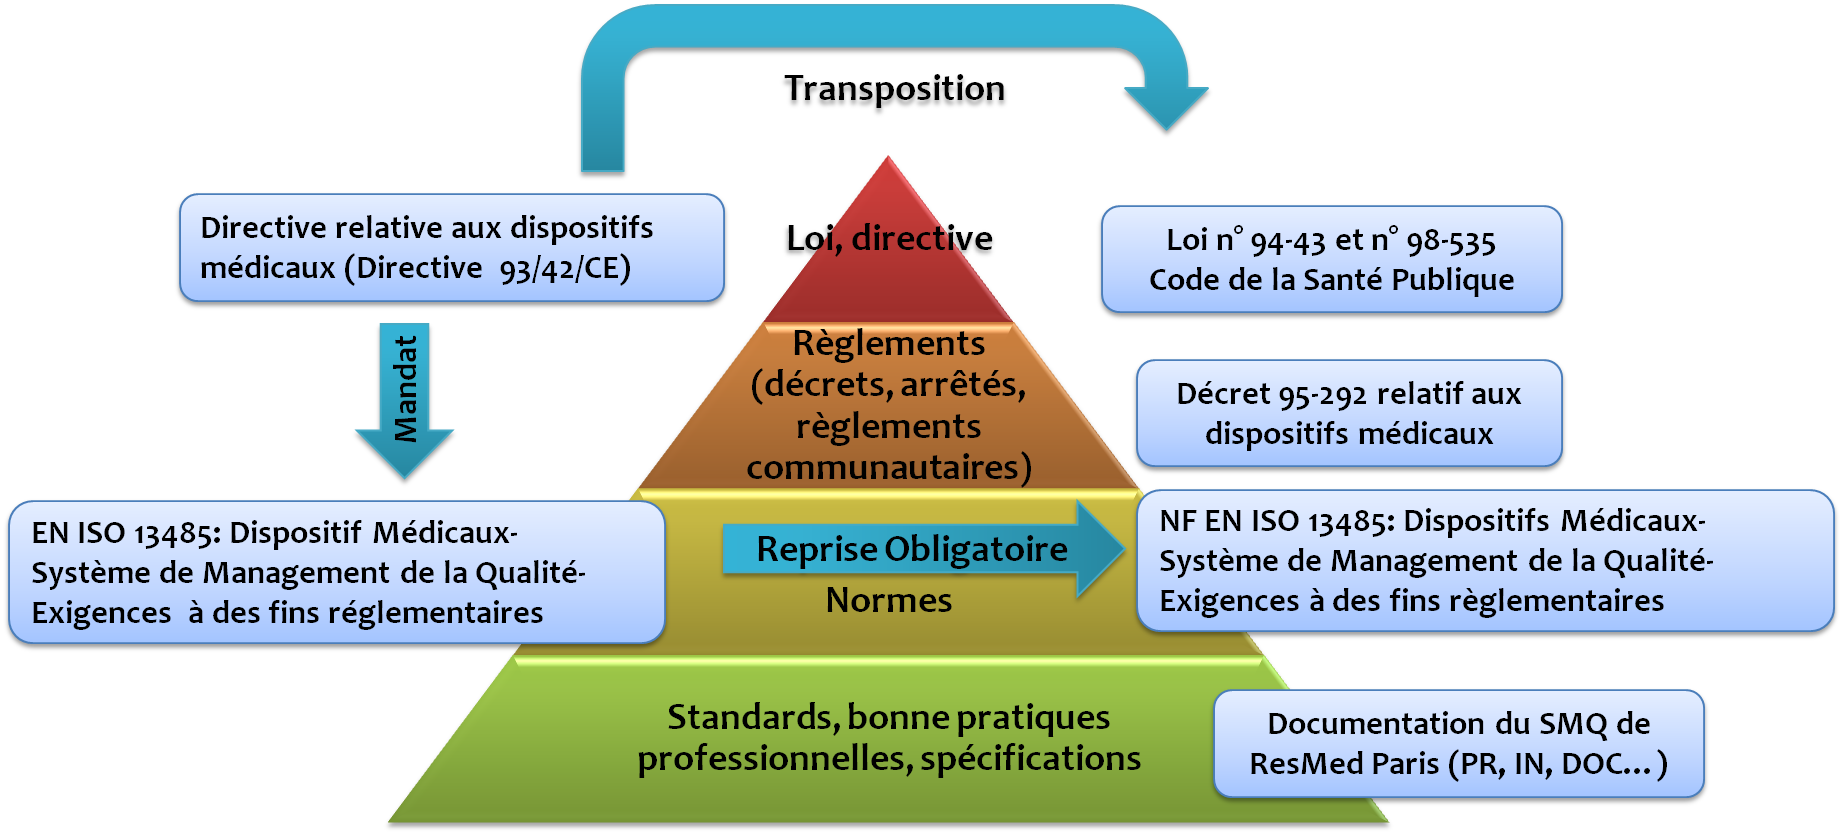 Structure reglementaire et normative de Resmed